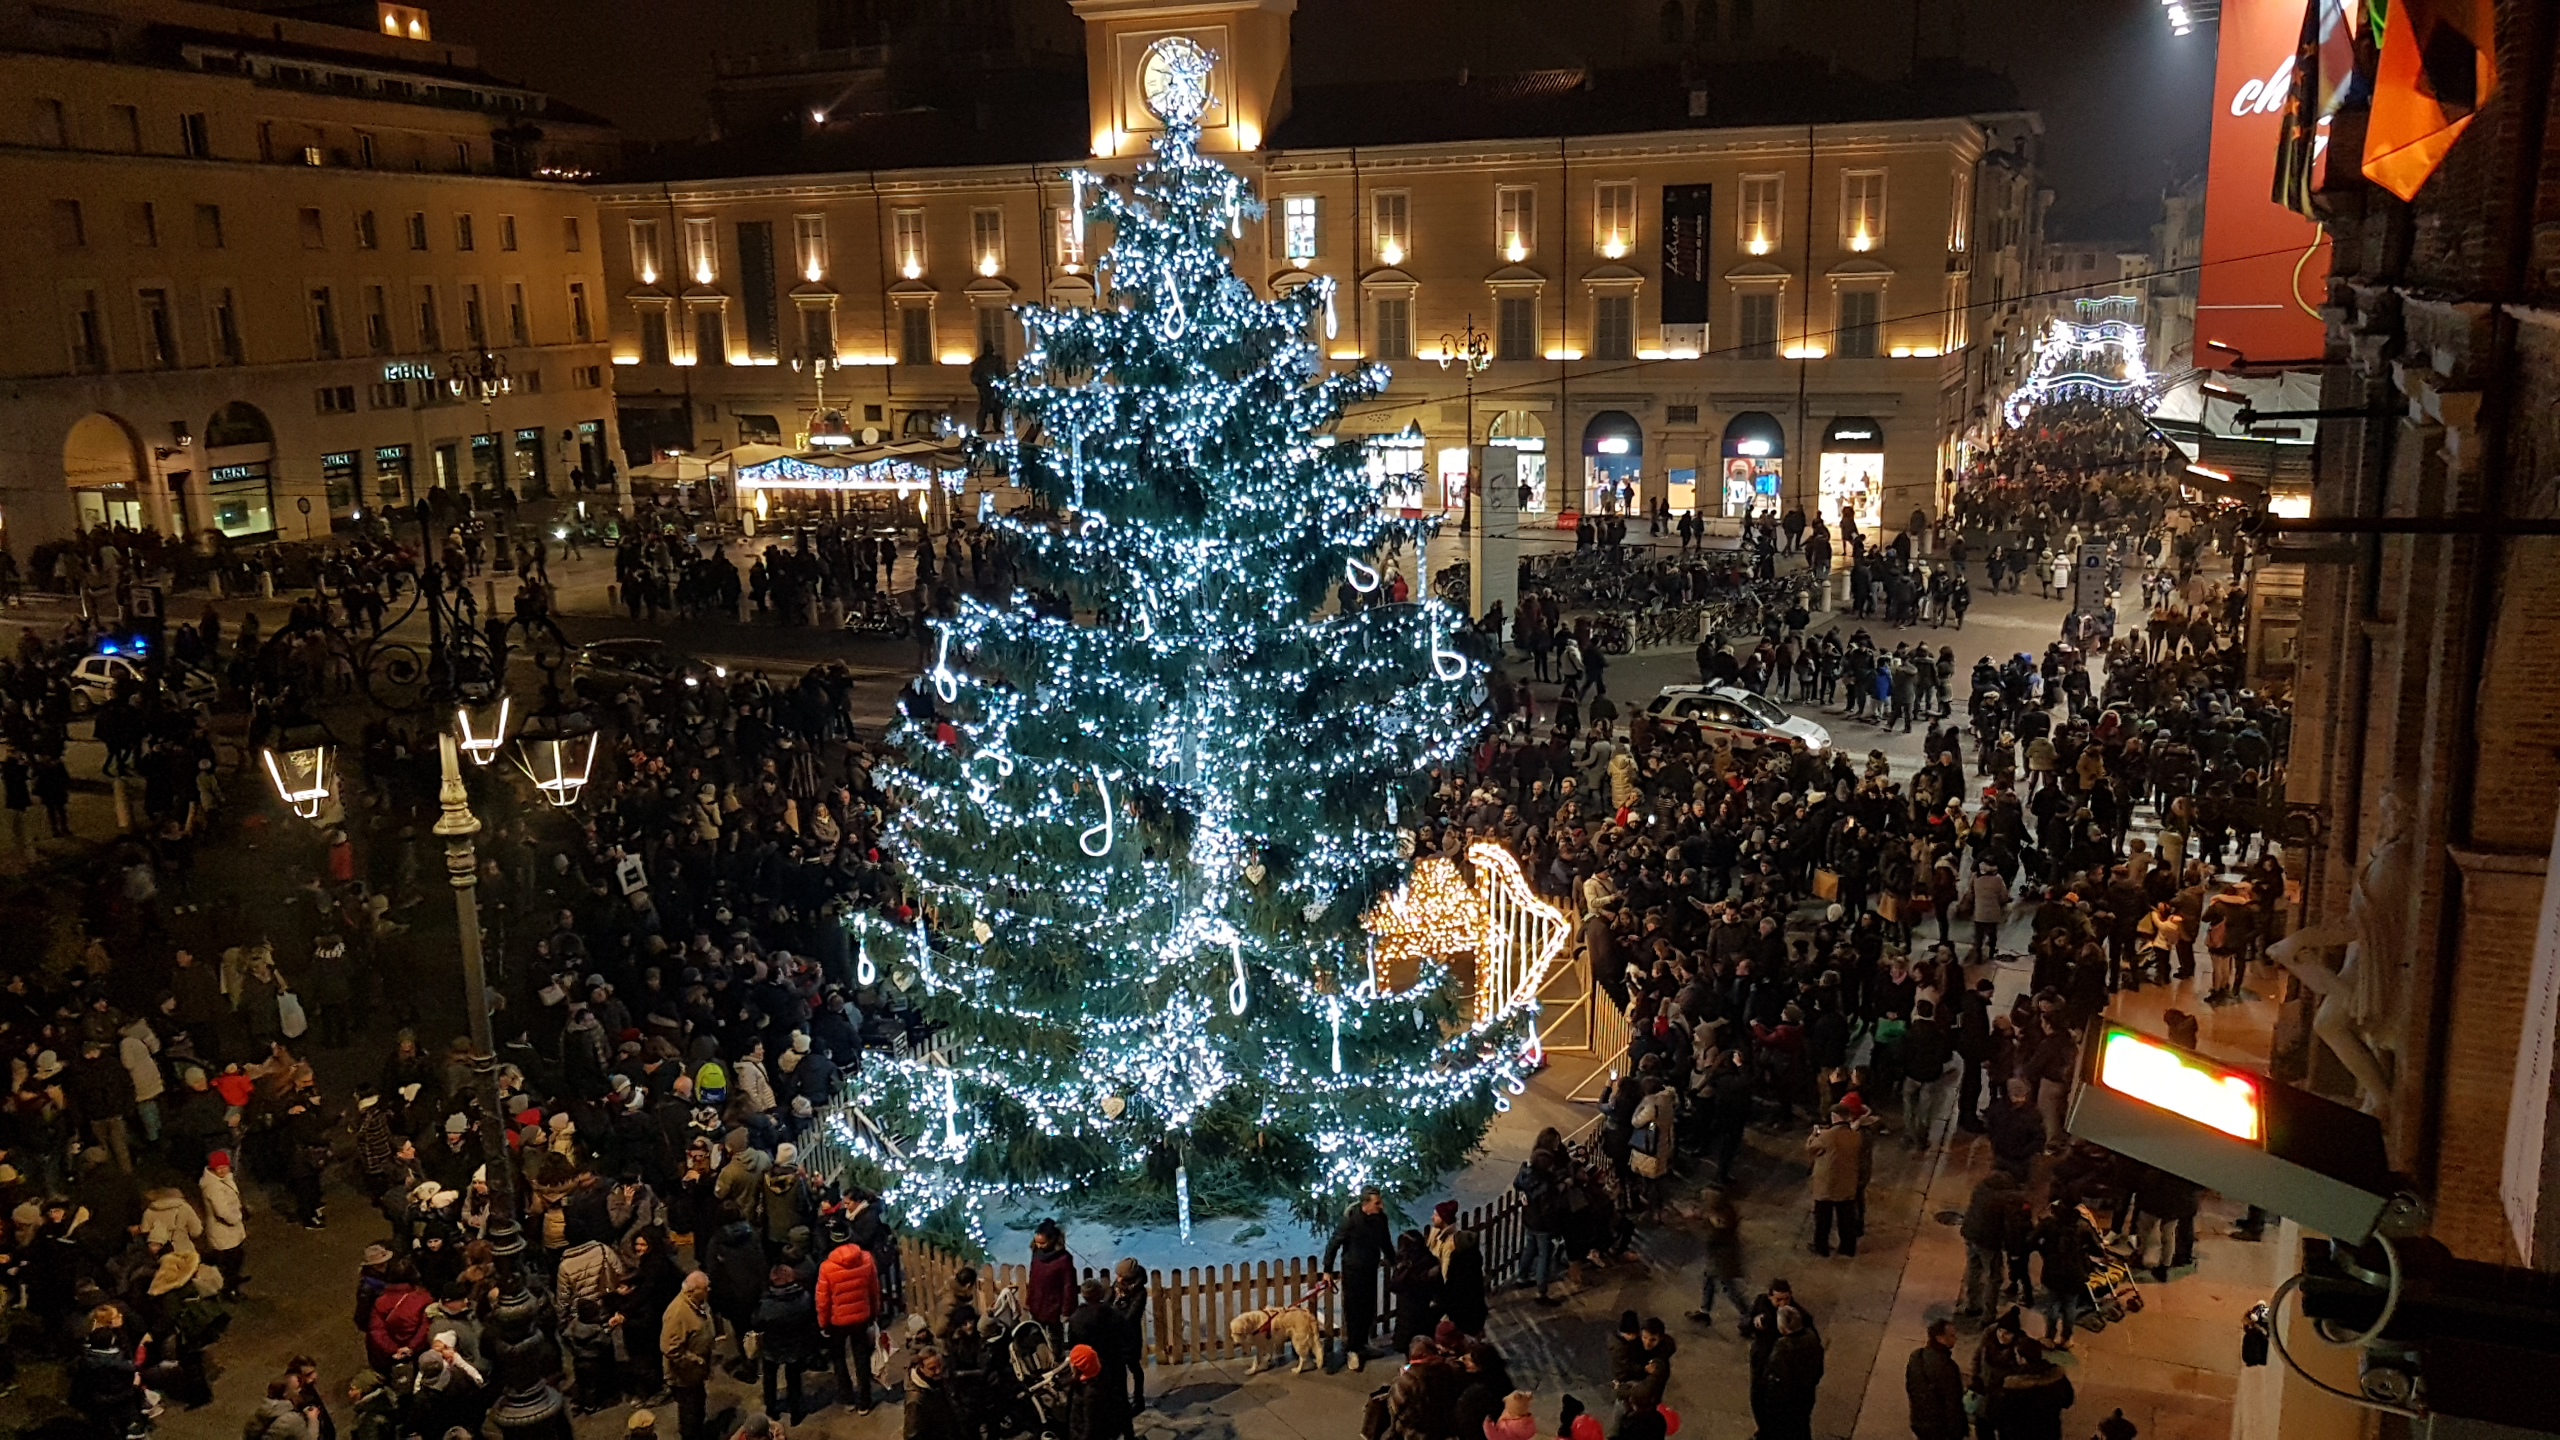 Regali Di Natale Culturali.Consigli Di Natale 5 Idee Regalo Tra Le Migliori Boutique Del Centro Di Parma Il Caffe Quotidiano